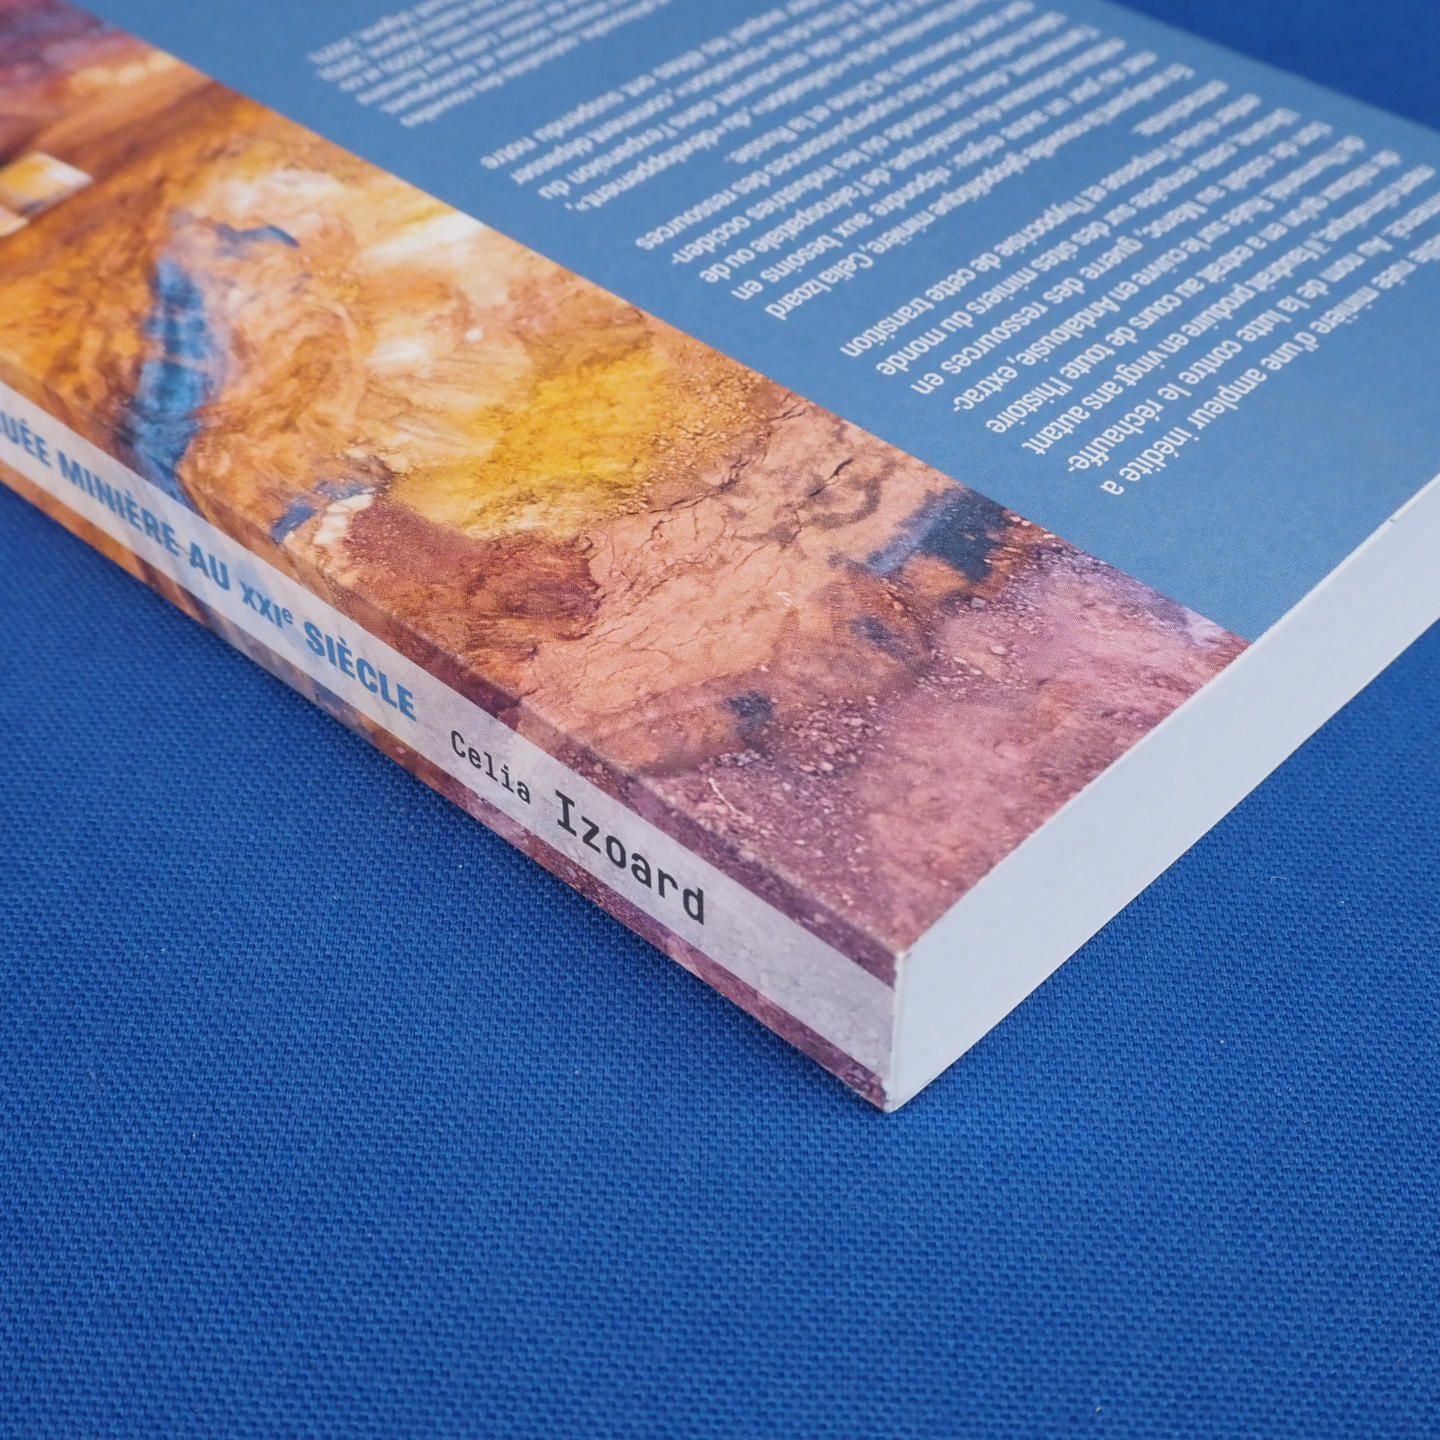 Book 'La Ruée minière au XXIe siècle' by Celia Izoard